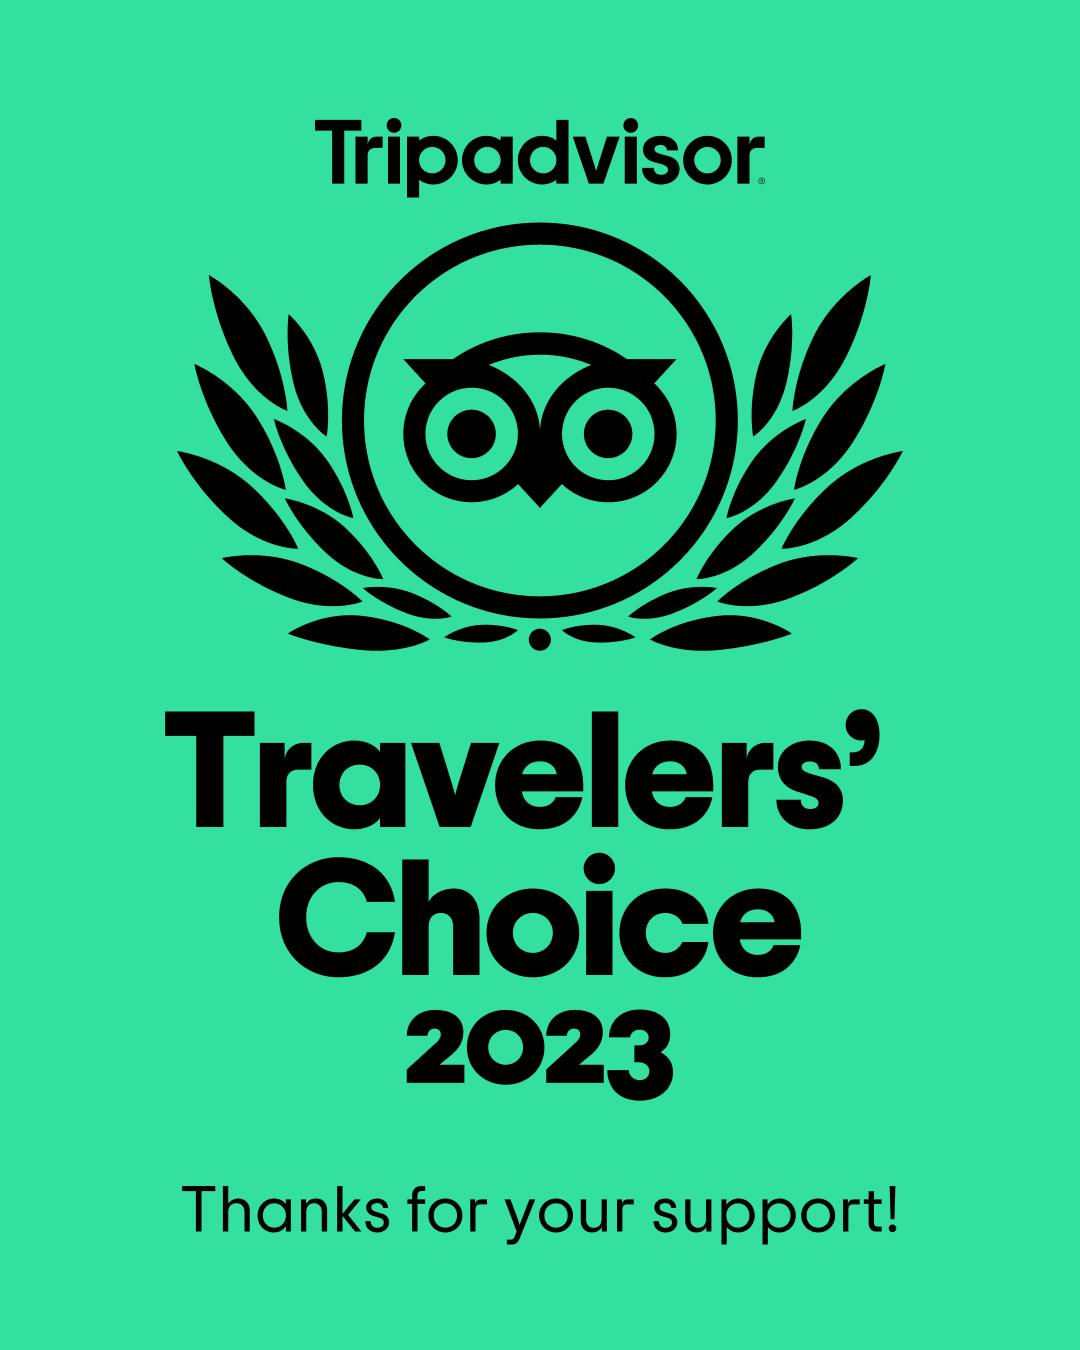 Tripadvisor Travelers' Choice 2023 badge